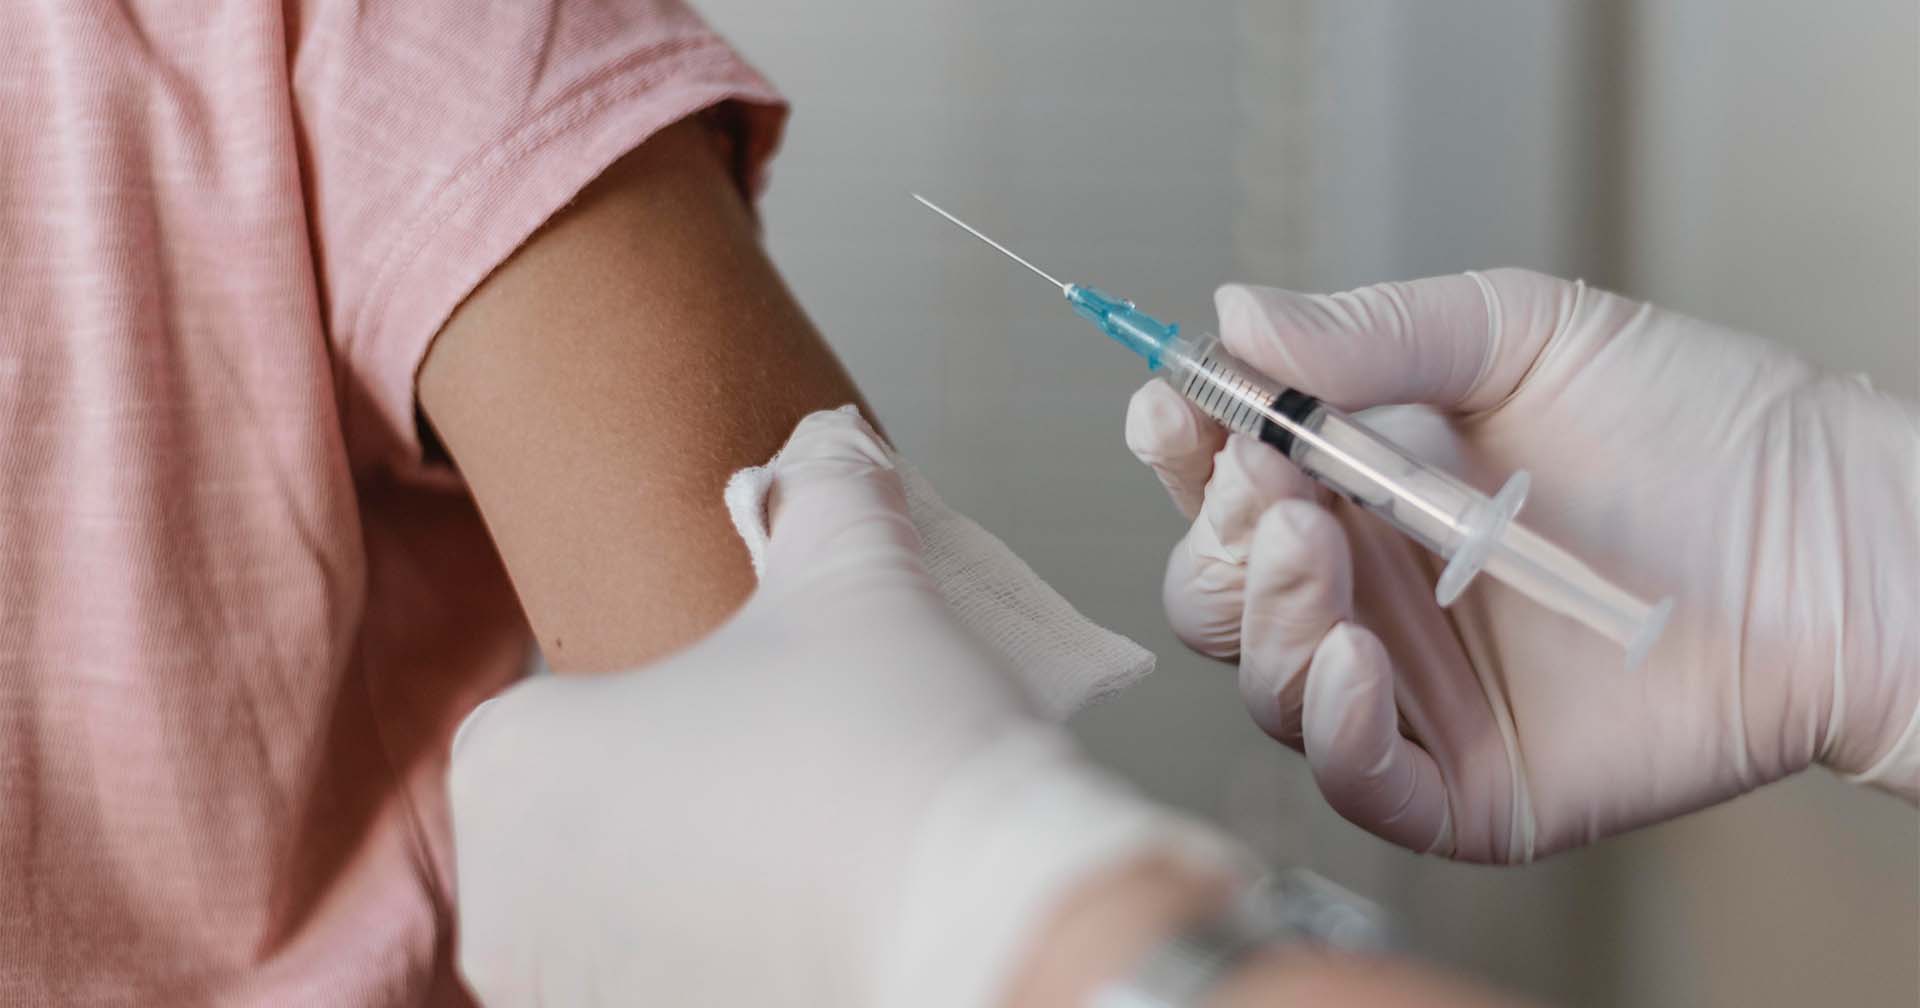 ศบค. ชี้แจงนโยบายการฉีดวัคซีนในเด็กพร้อมสูตรการฉีดวัคซีน